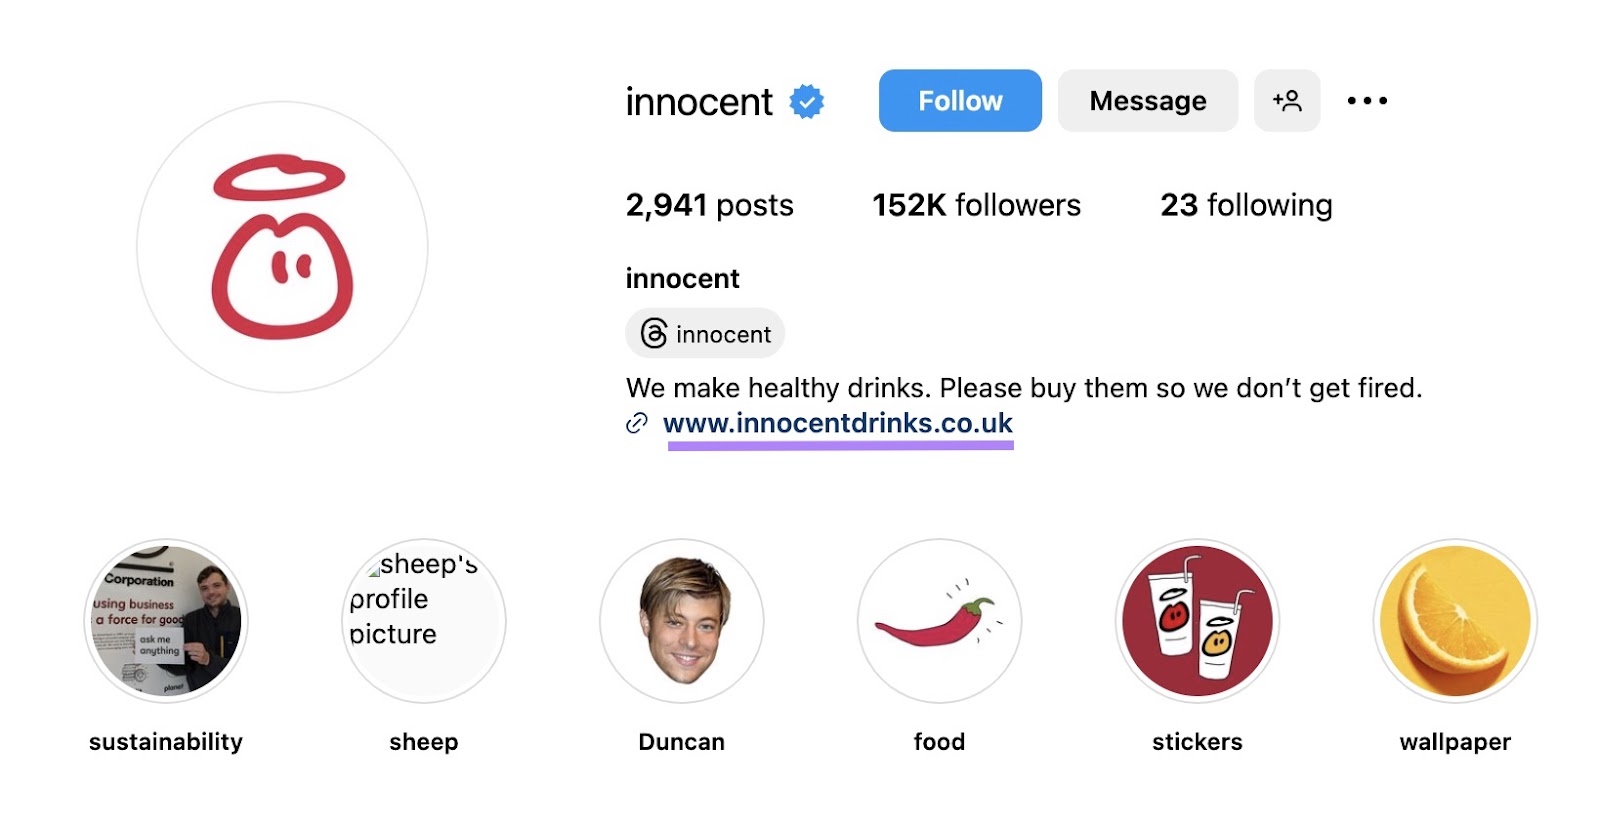 a nexus  to Innocent's website successful  its Instagram bio